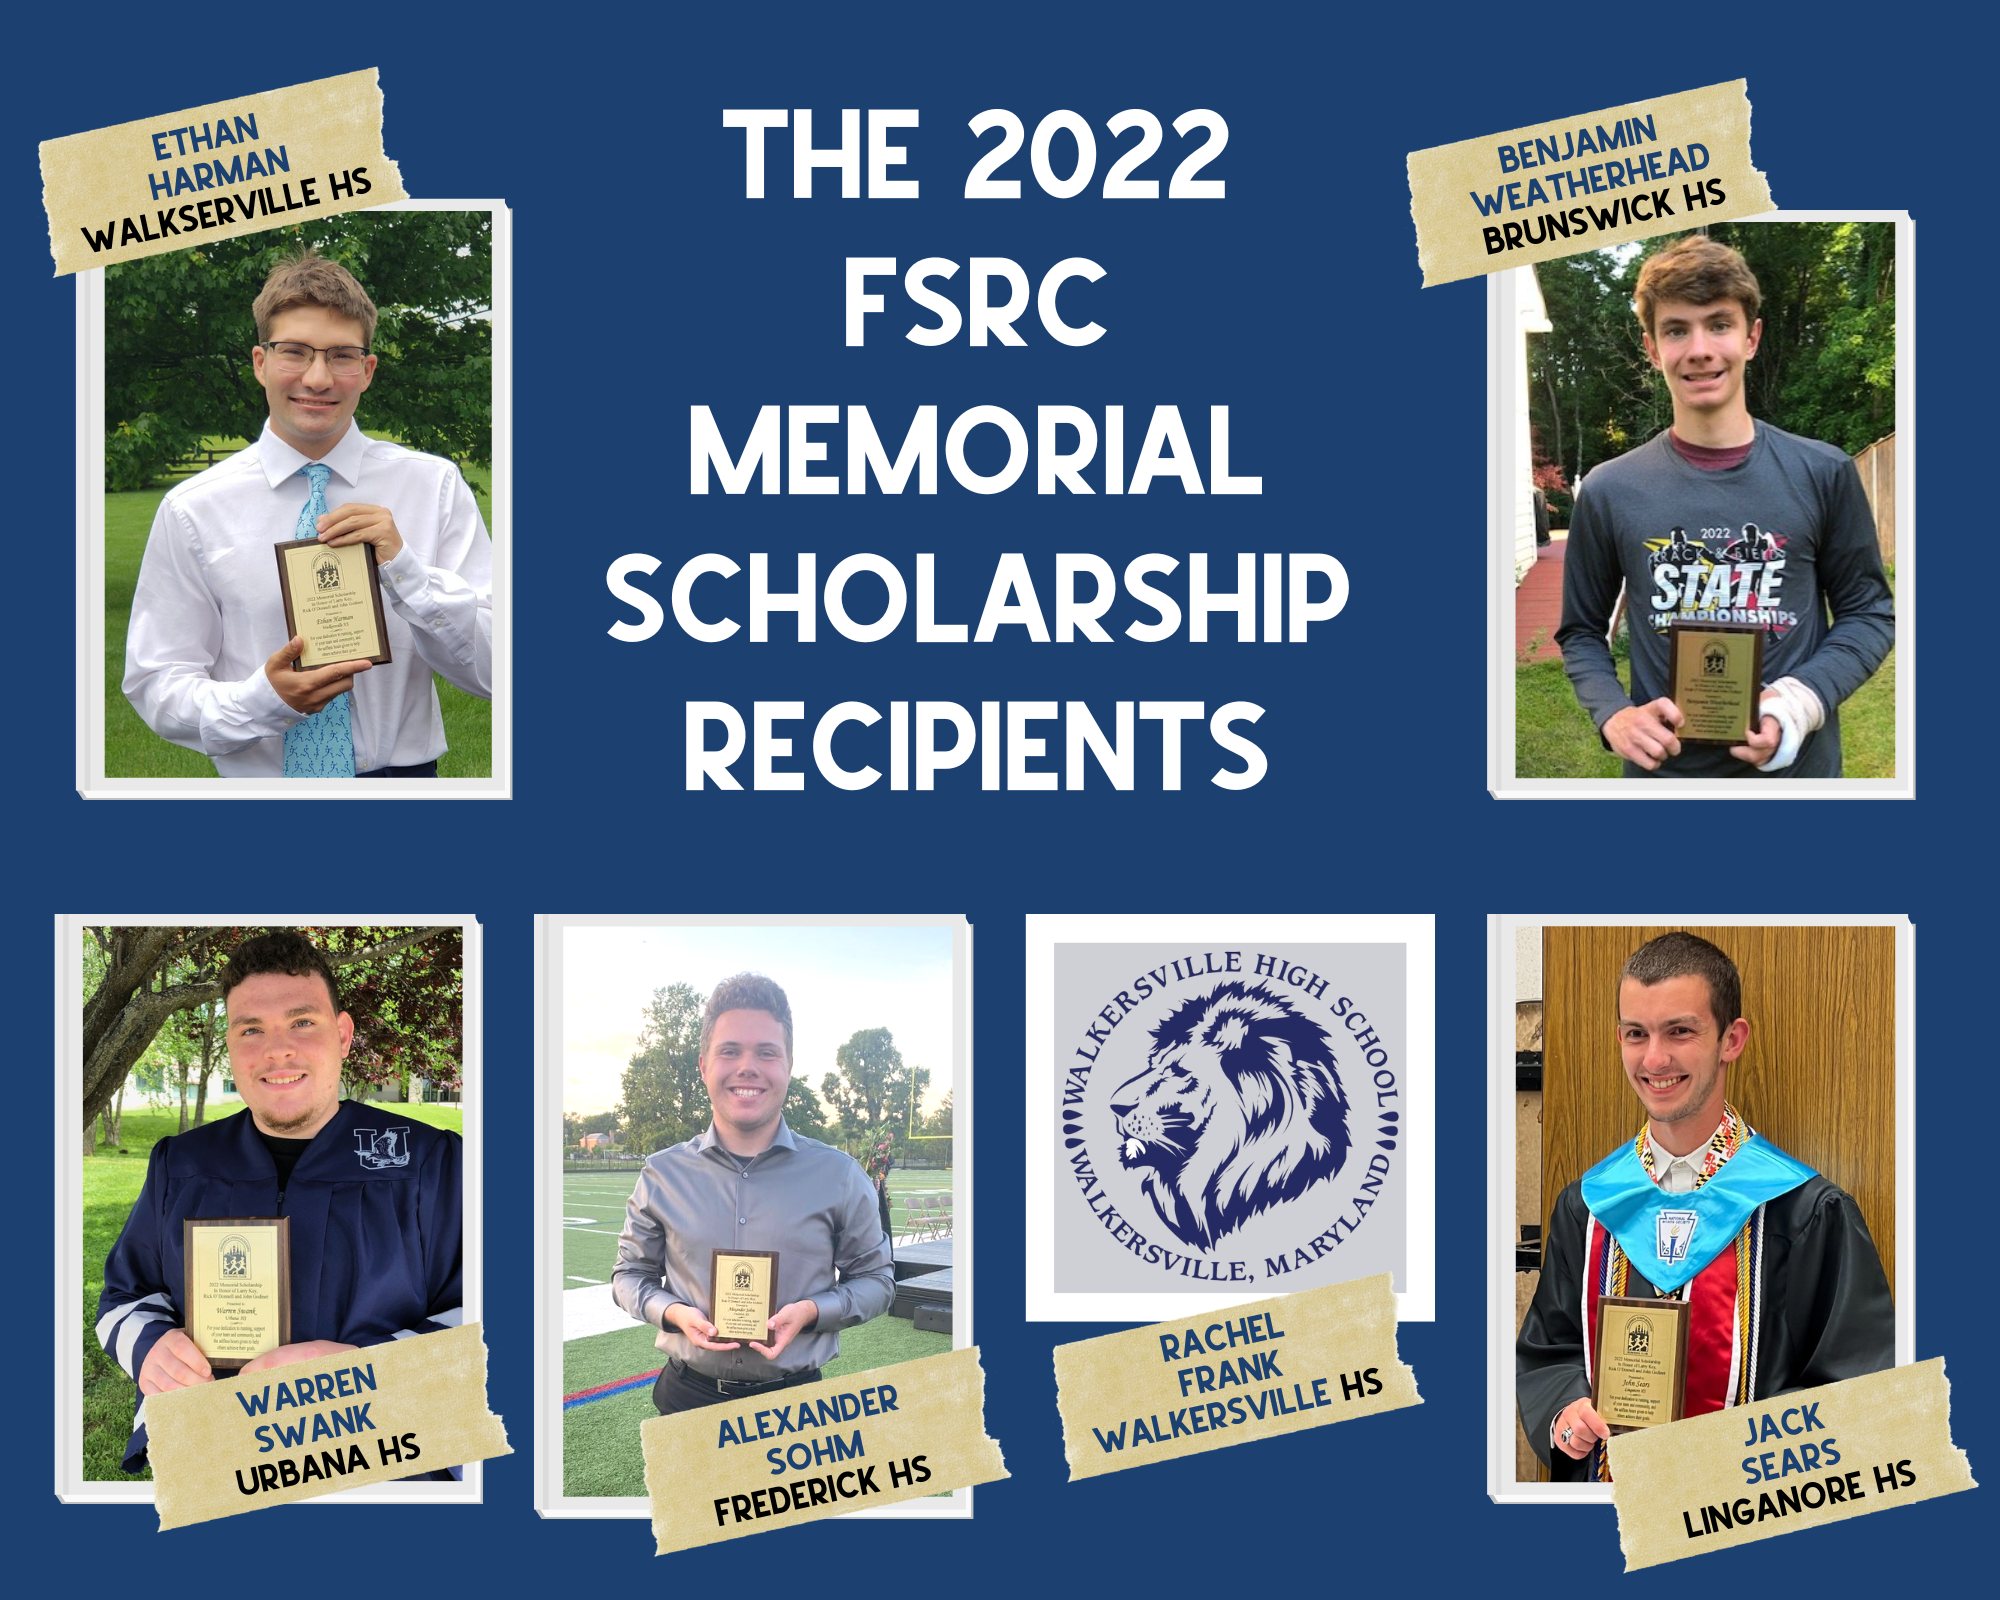 The FSRC 2022 Memorial Scholarship Recipients